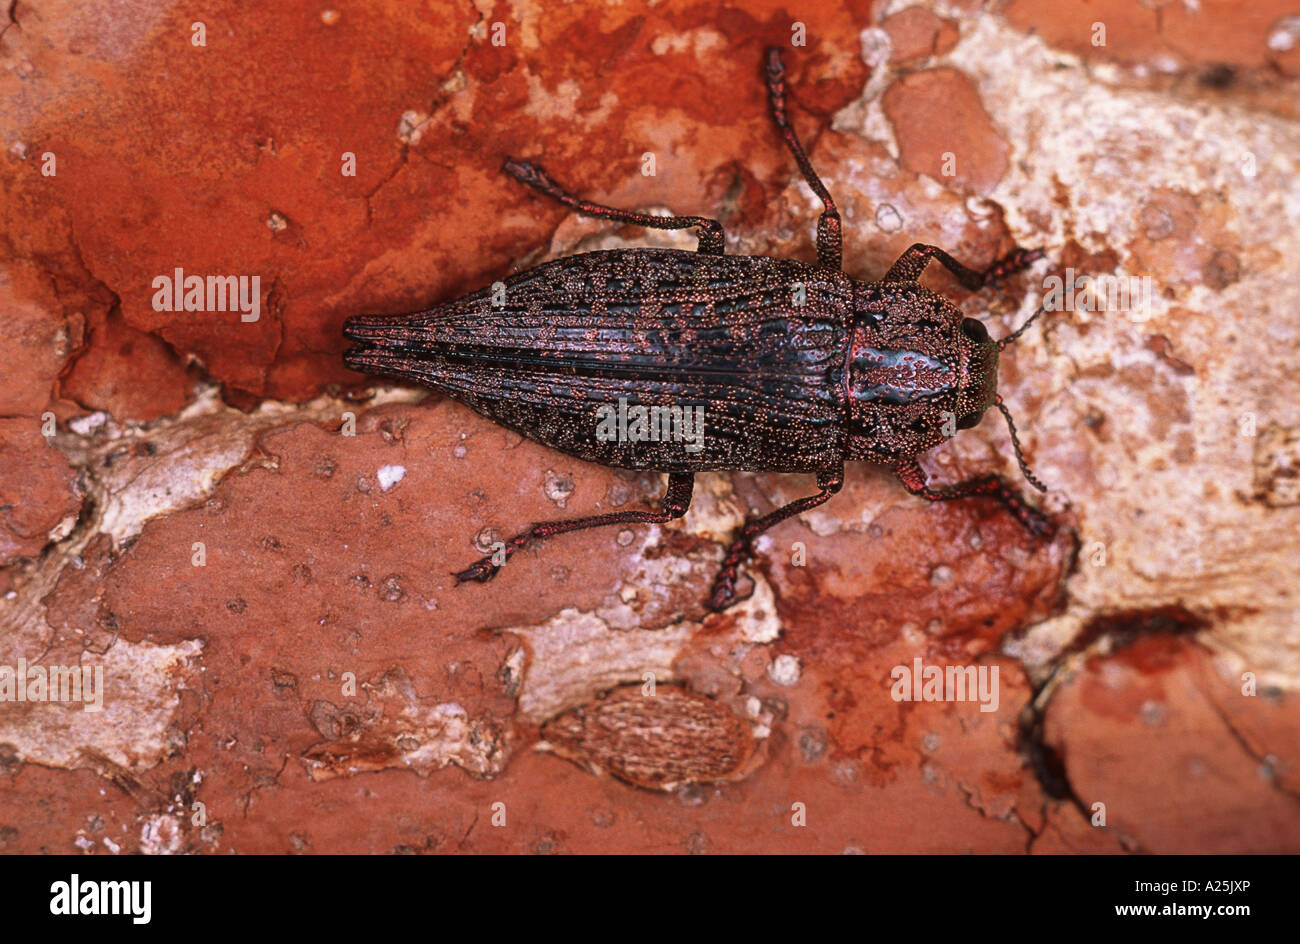 Perforadores de insectos fotografías e imágenes de alta resolución - Página  5 - Alamy